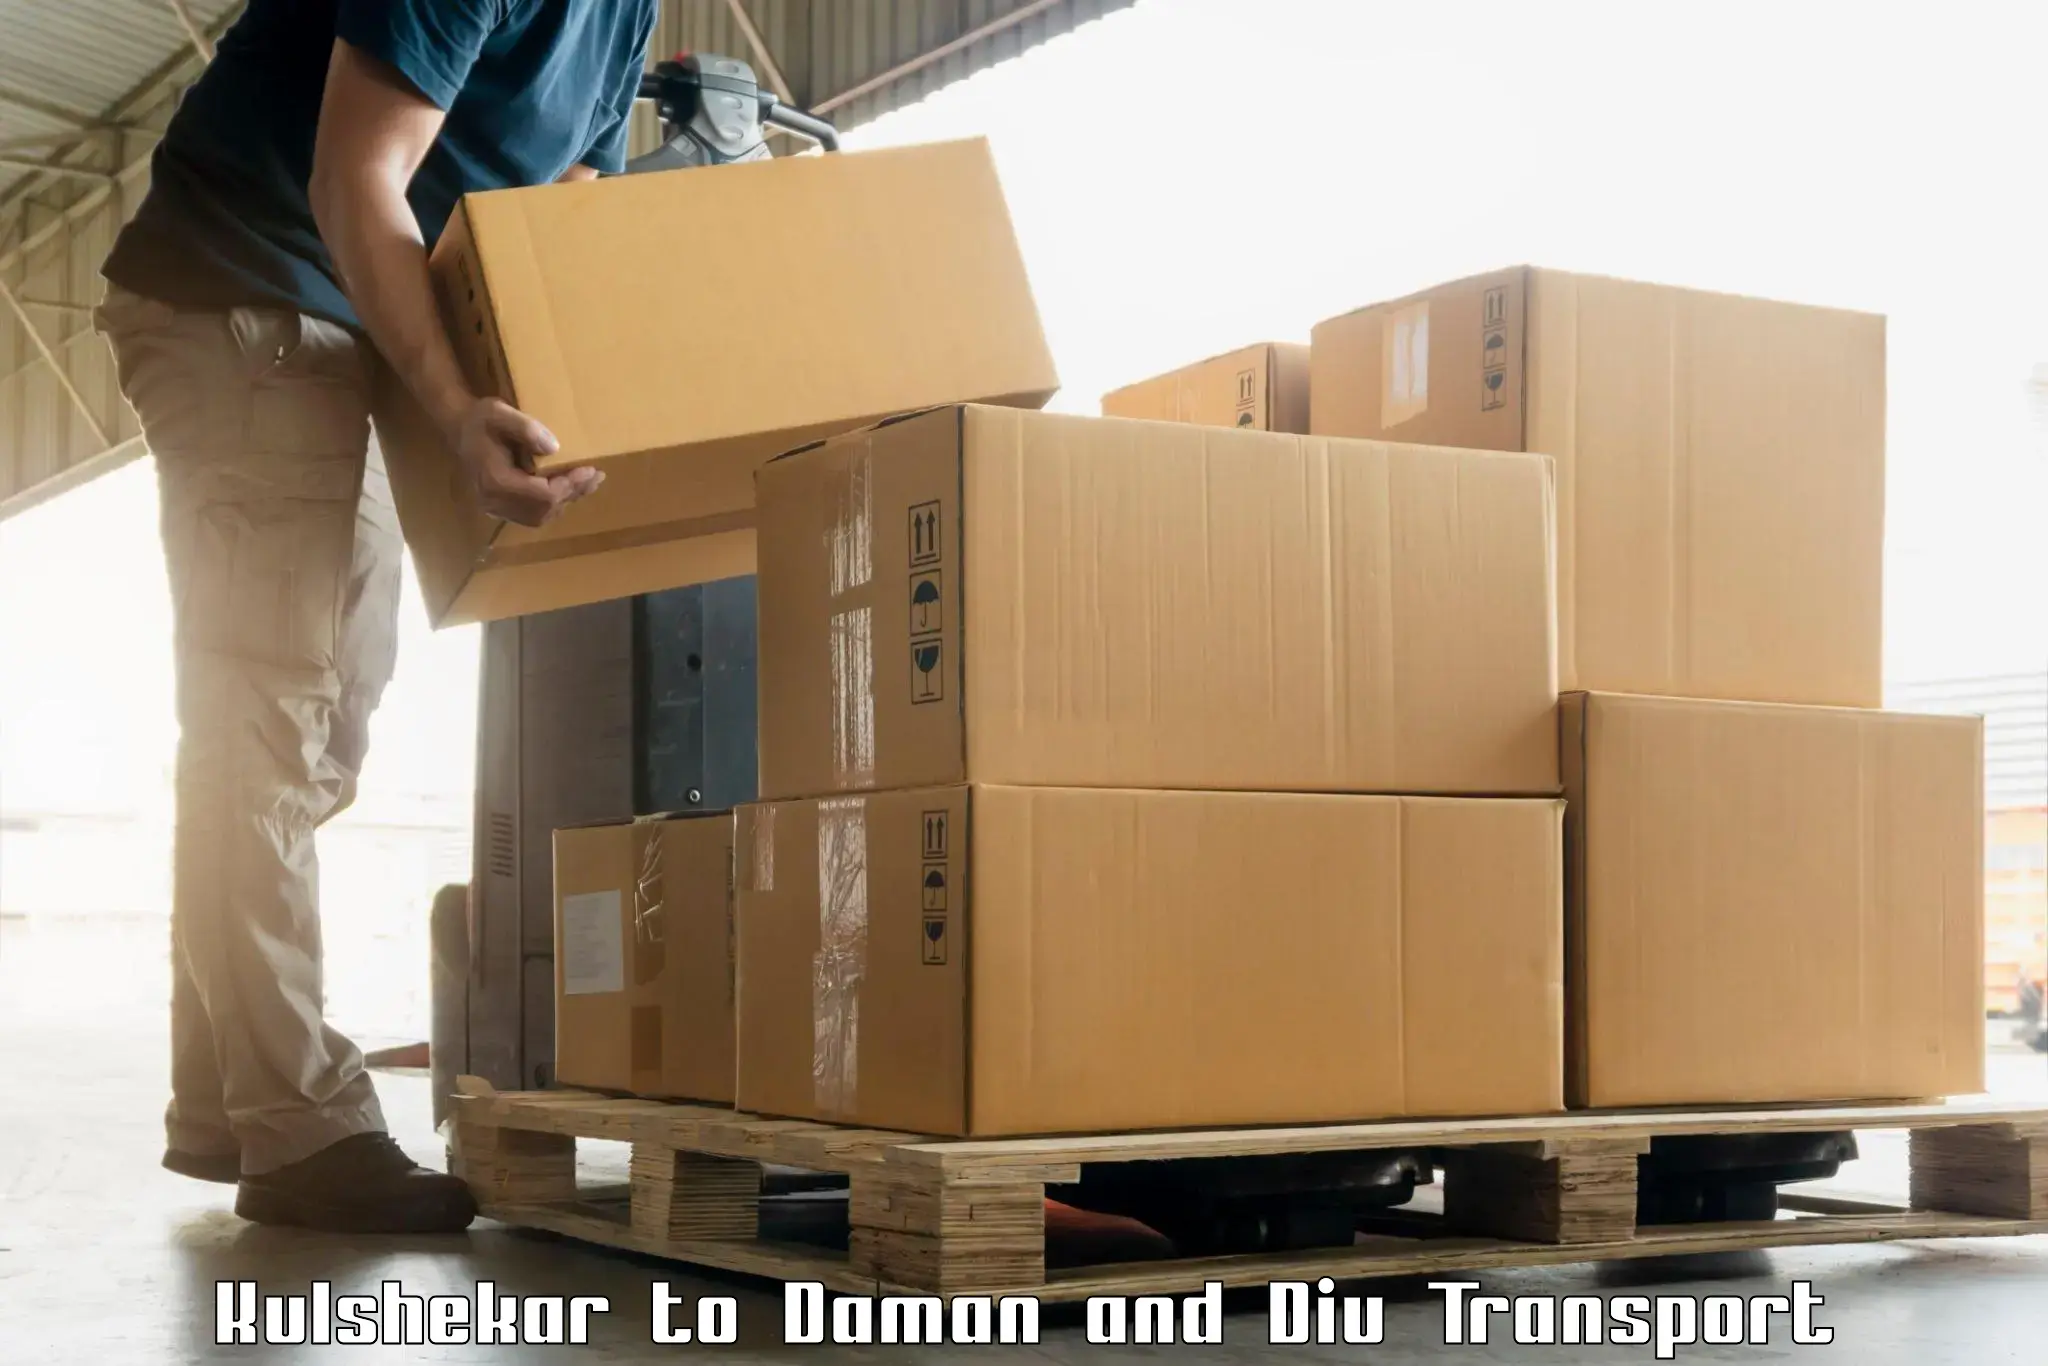 Cargo transport services Kulshekar to Daman and Diu